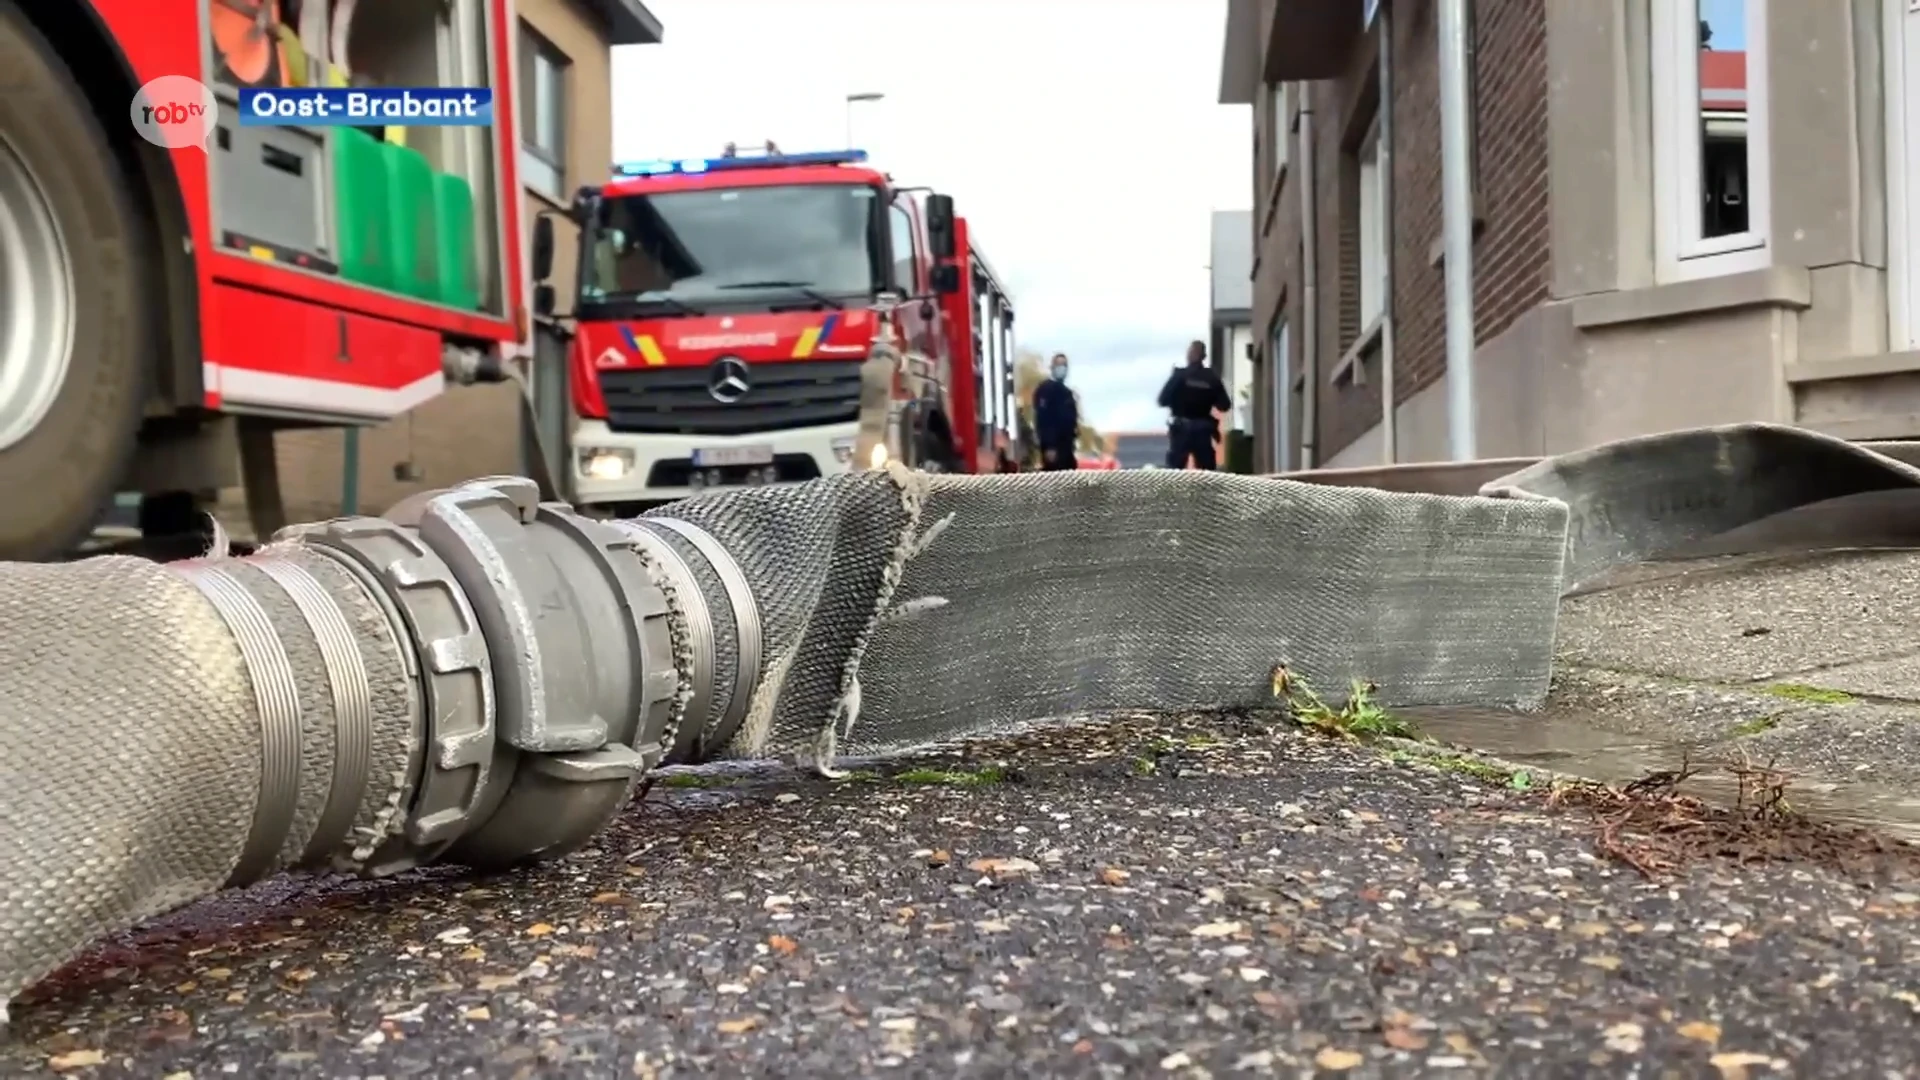 Werkgroep brandweerzone Oost-Brabant wil eerst investeren in kazerne Leuven: "Als er op volgende zoneraad geen beslissing is, kan ik niet uitsluiten dat er geen acties zullen volgen", aldus ACOD